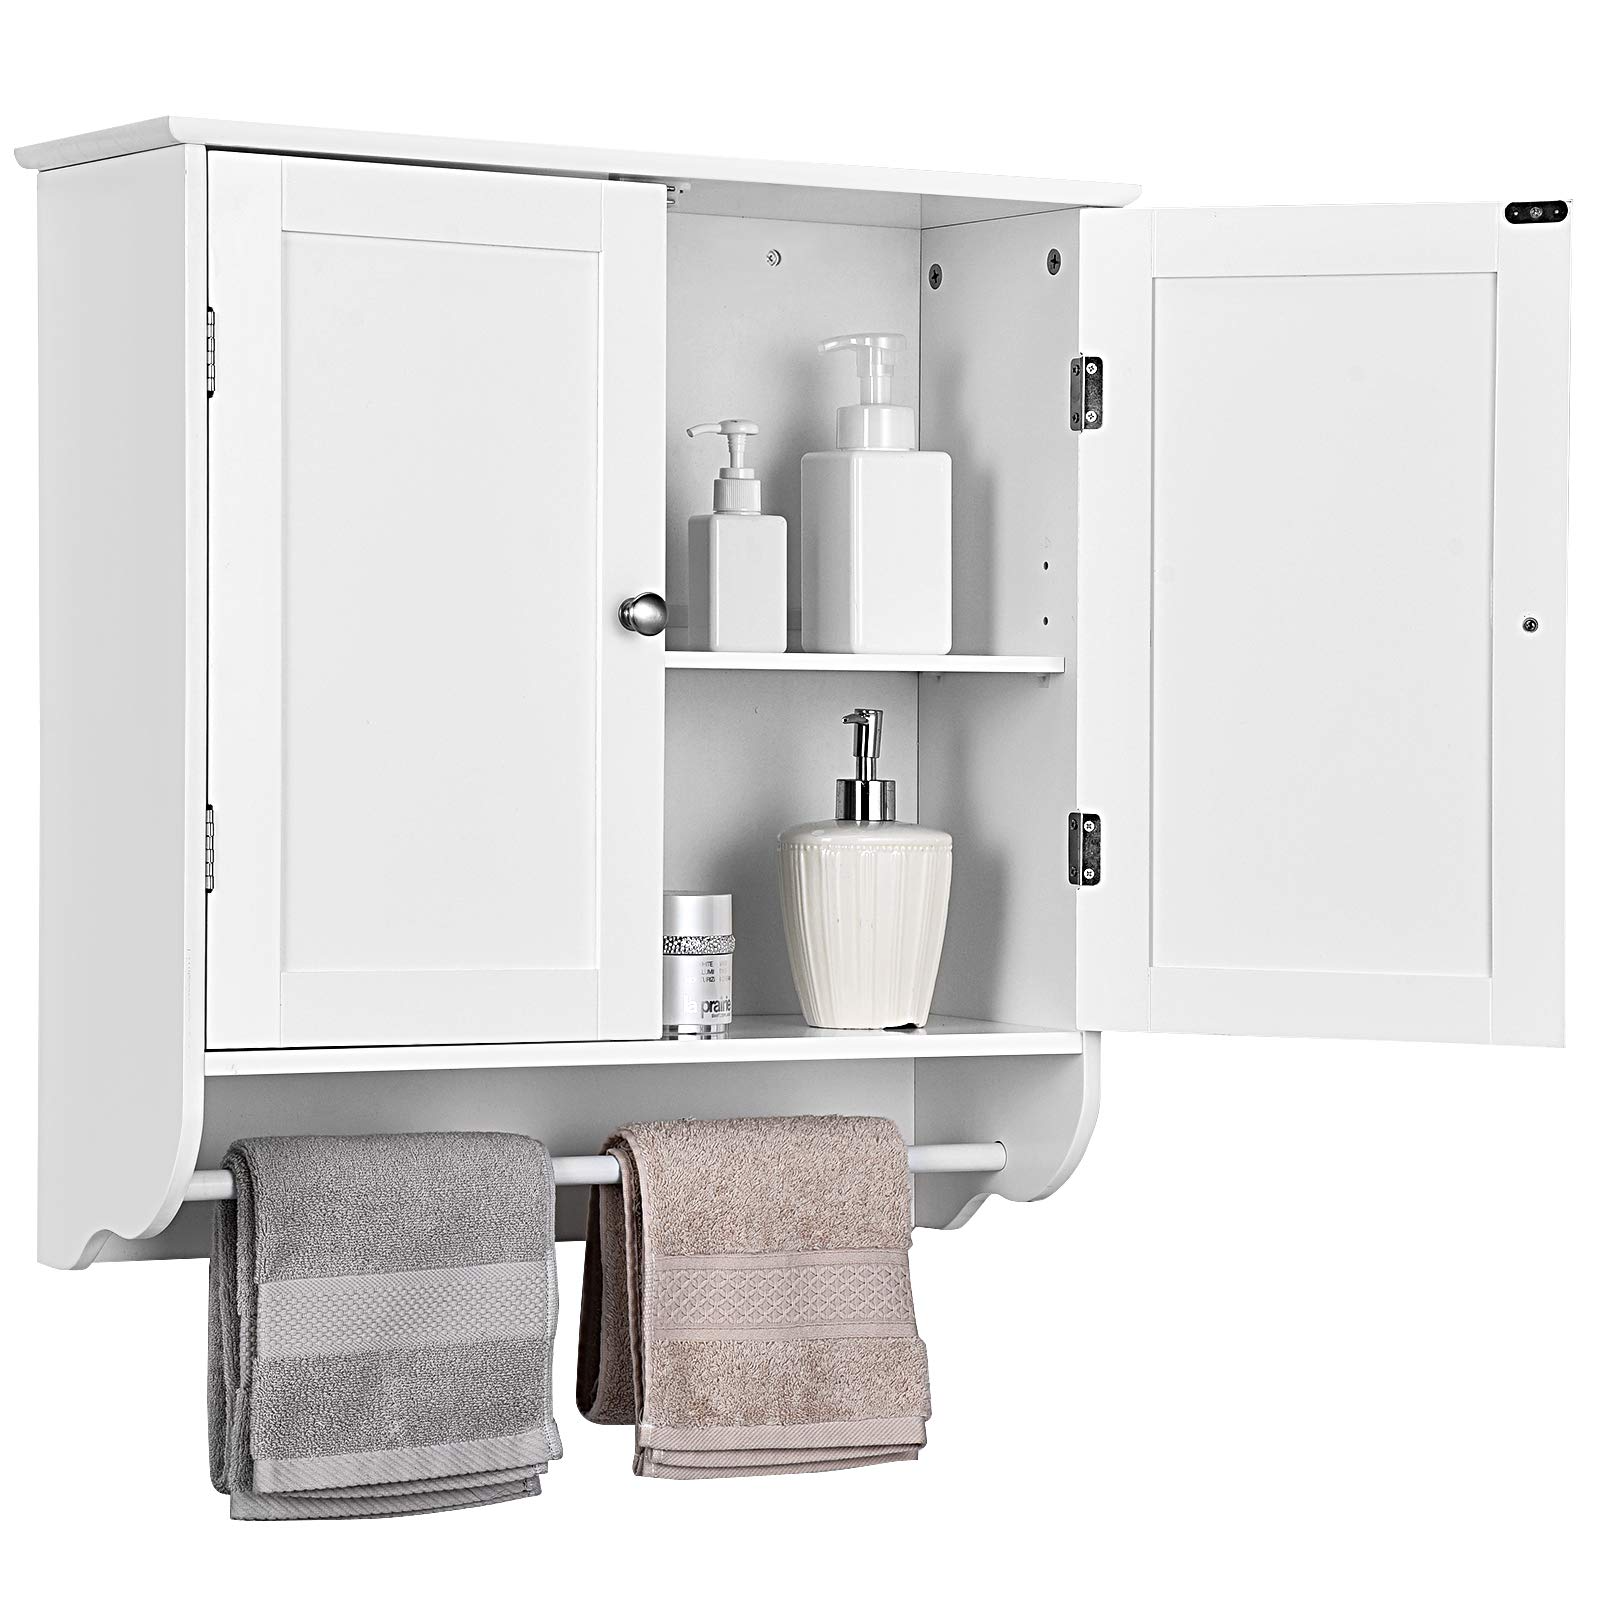 Tangkula Bathroom Medicine Cabinet, Wall Mounted Bathroom Cabinet